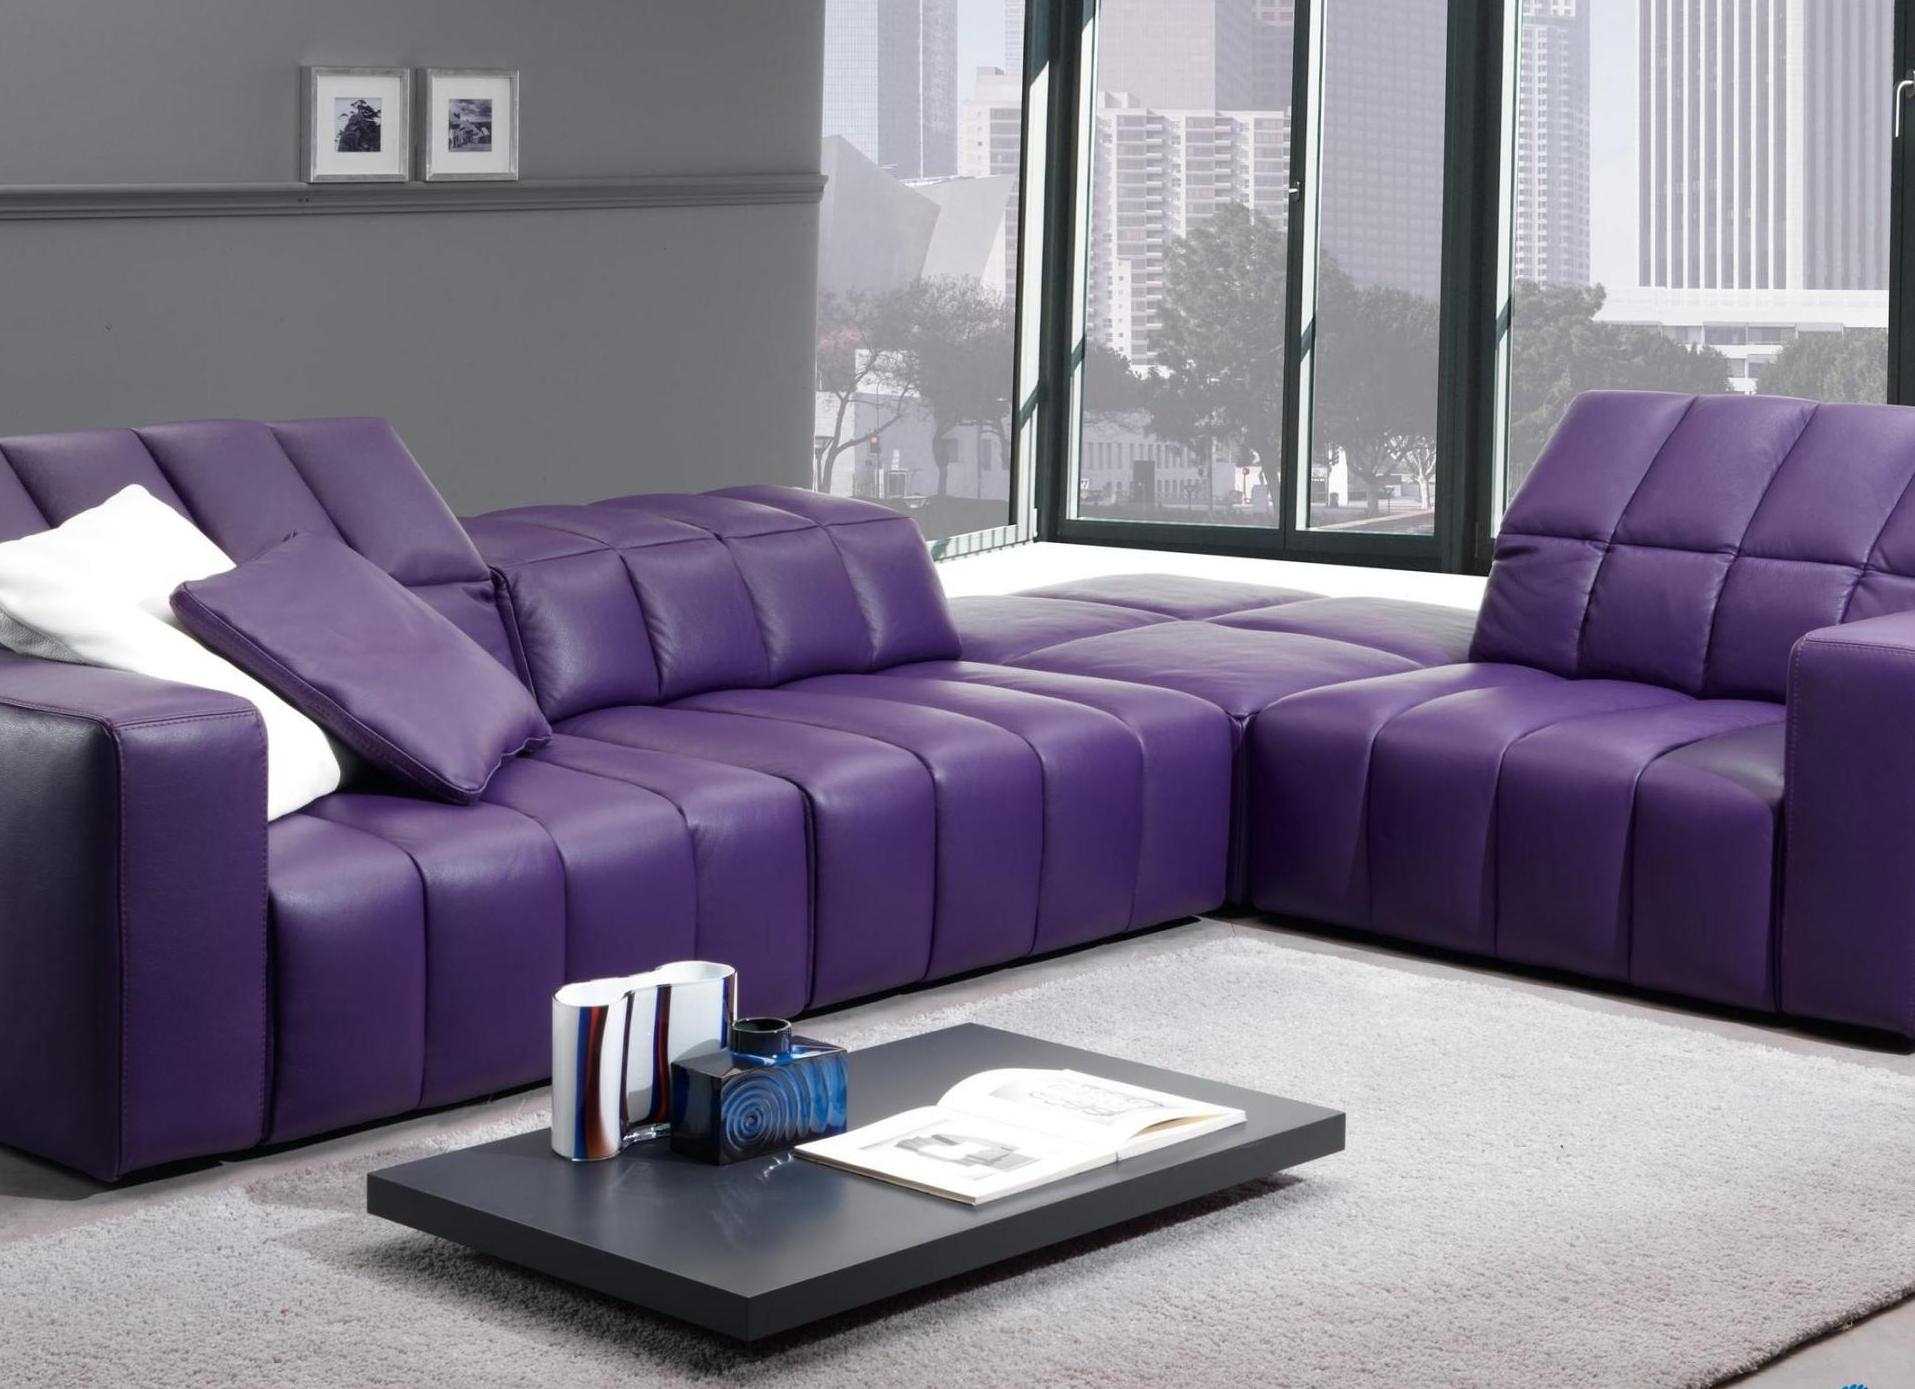 šviesiai violetinė sofa miegamojo dizaine